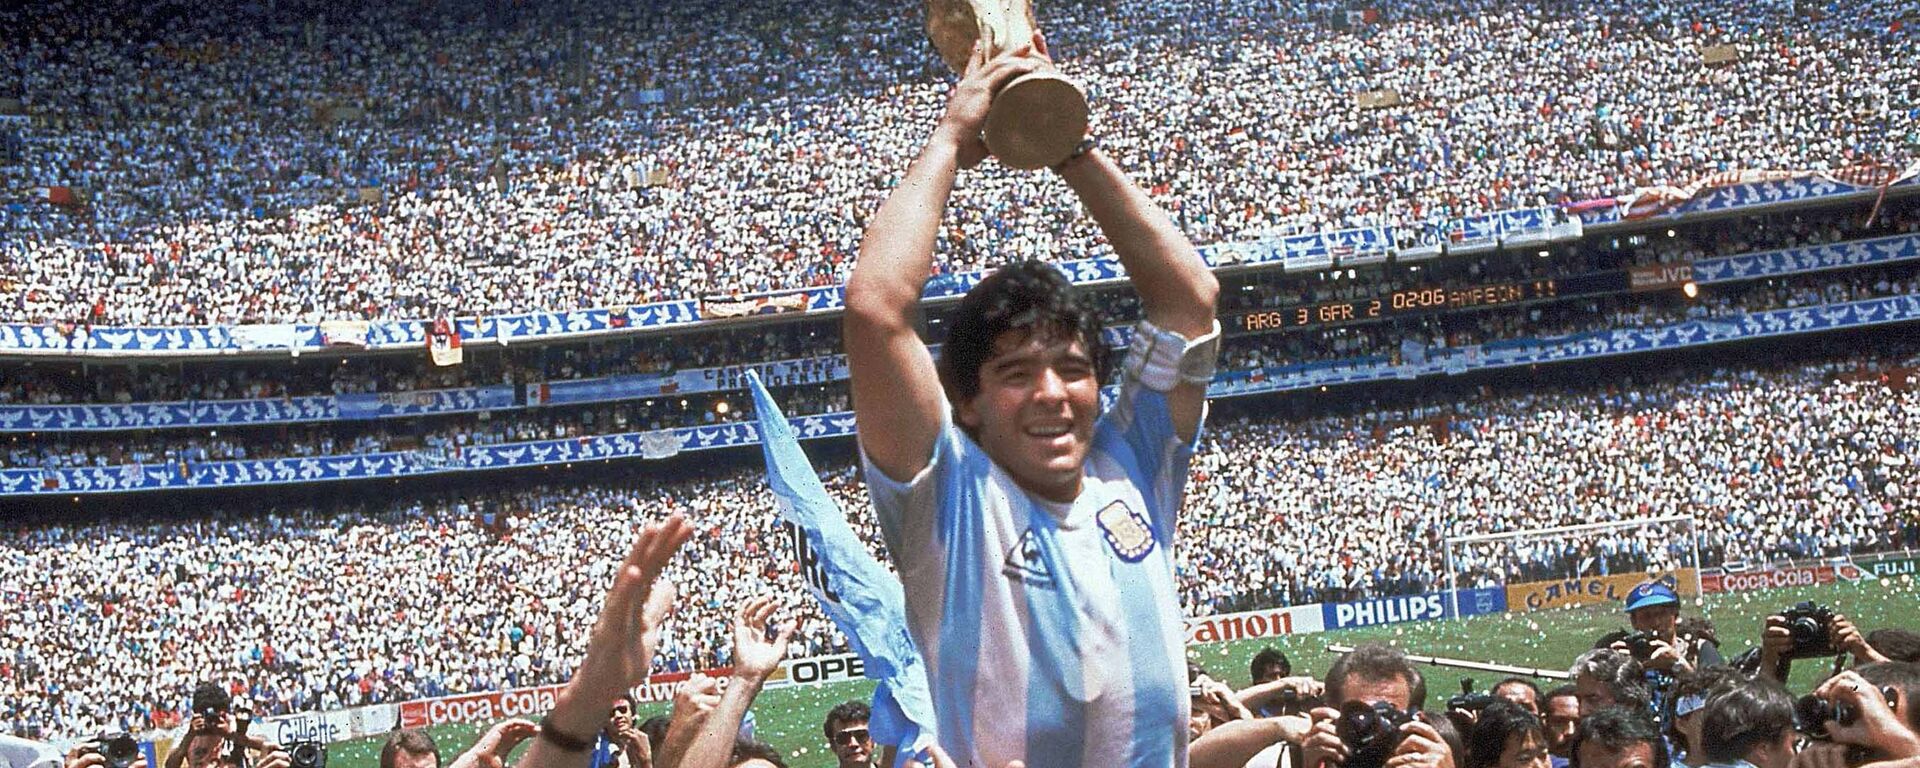 Dijego Maradona sa peharom svetskog prvaka na stadionu Asteka u Meksiko Sitiju 1986. - Sputnik Srbija, 1920, 25.11.2020